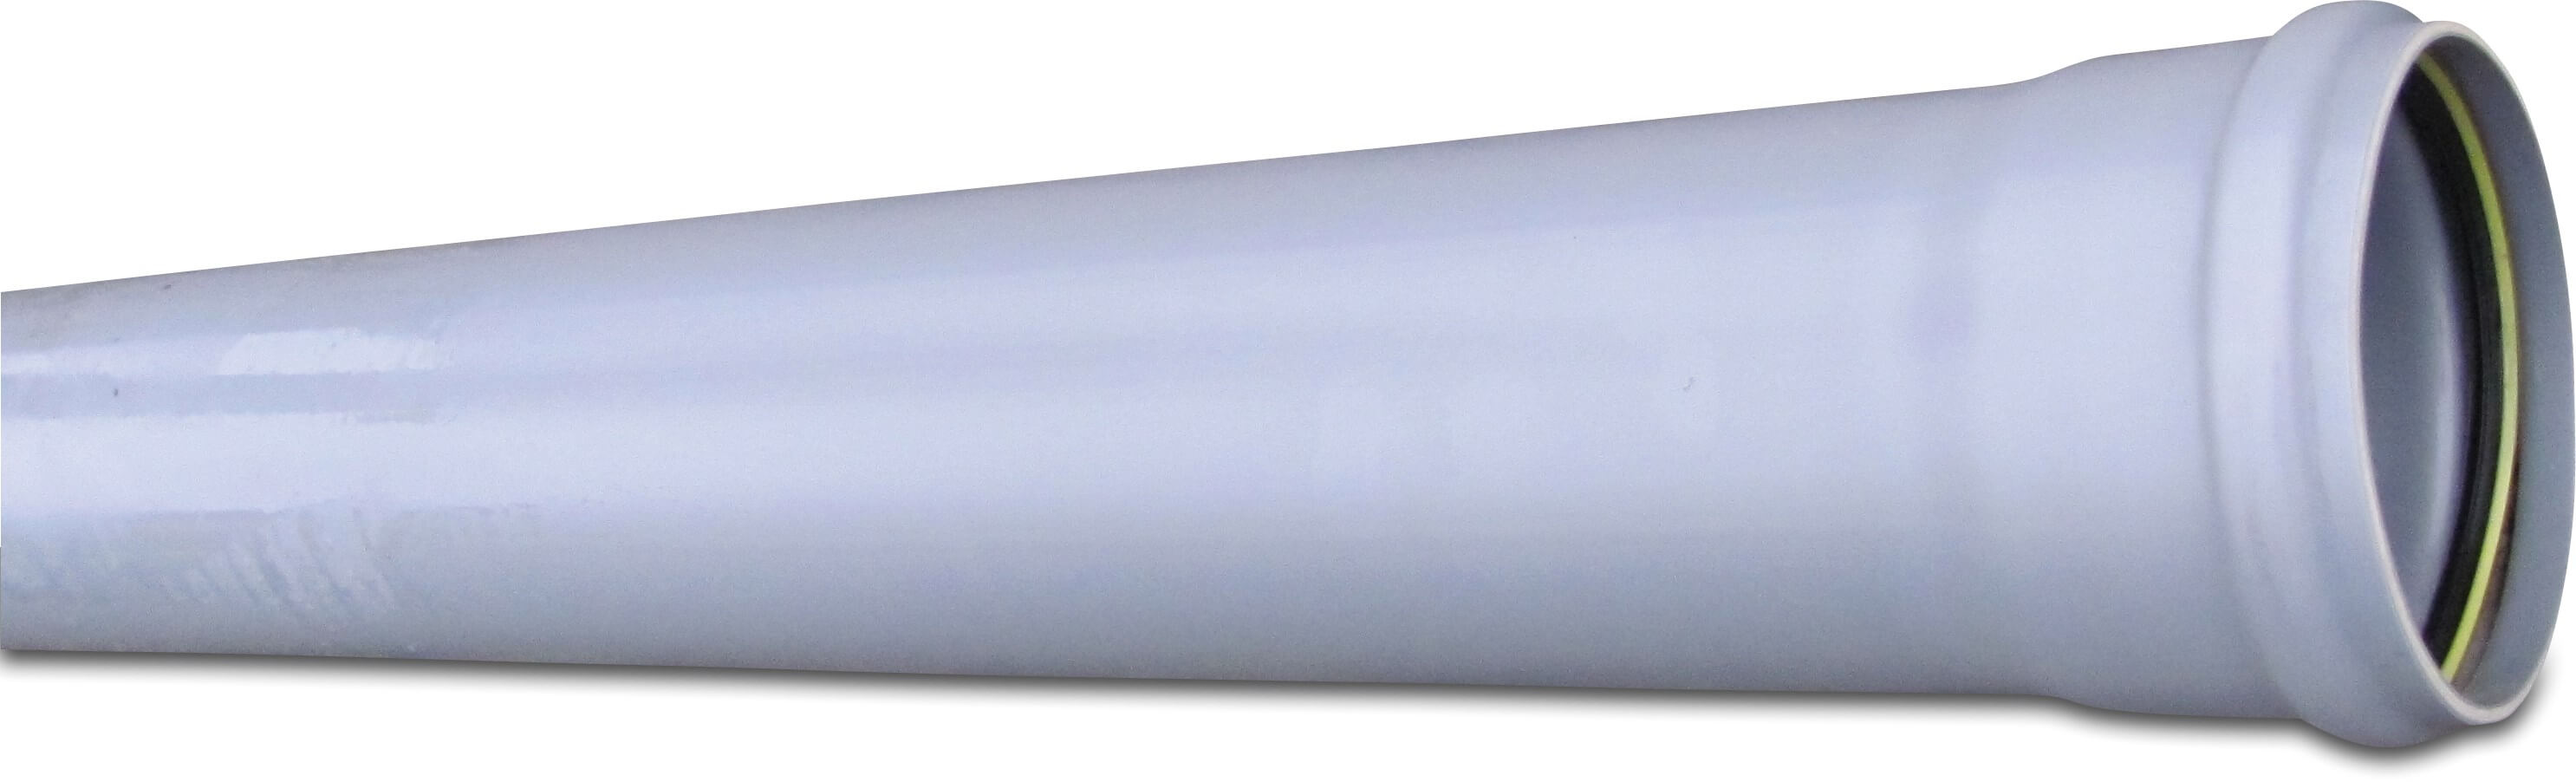 Drainage pipe PVC-U 125 mm x 3,7 mm SN8 ring seal x plain grey 5m KOMO